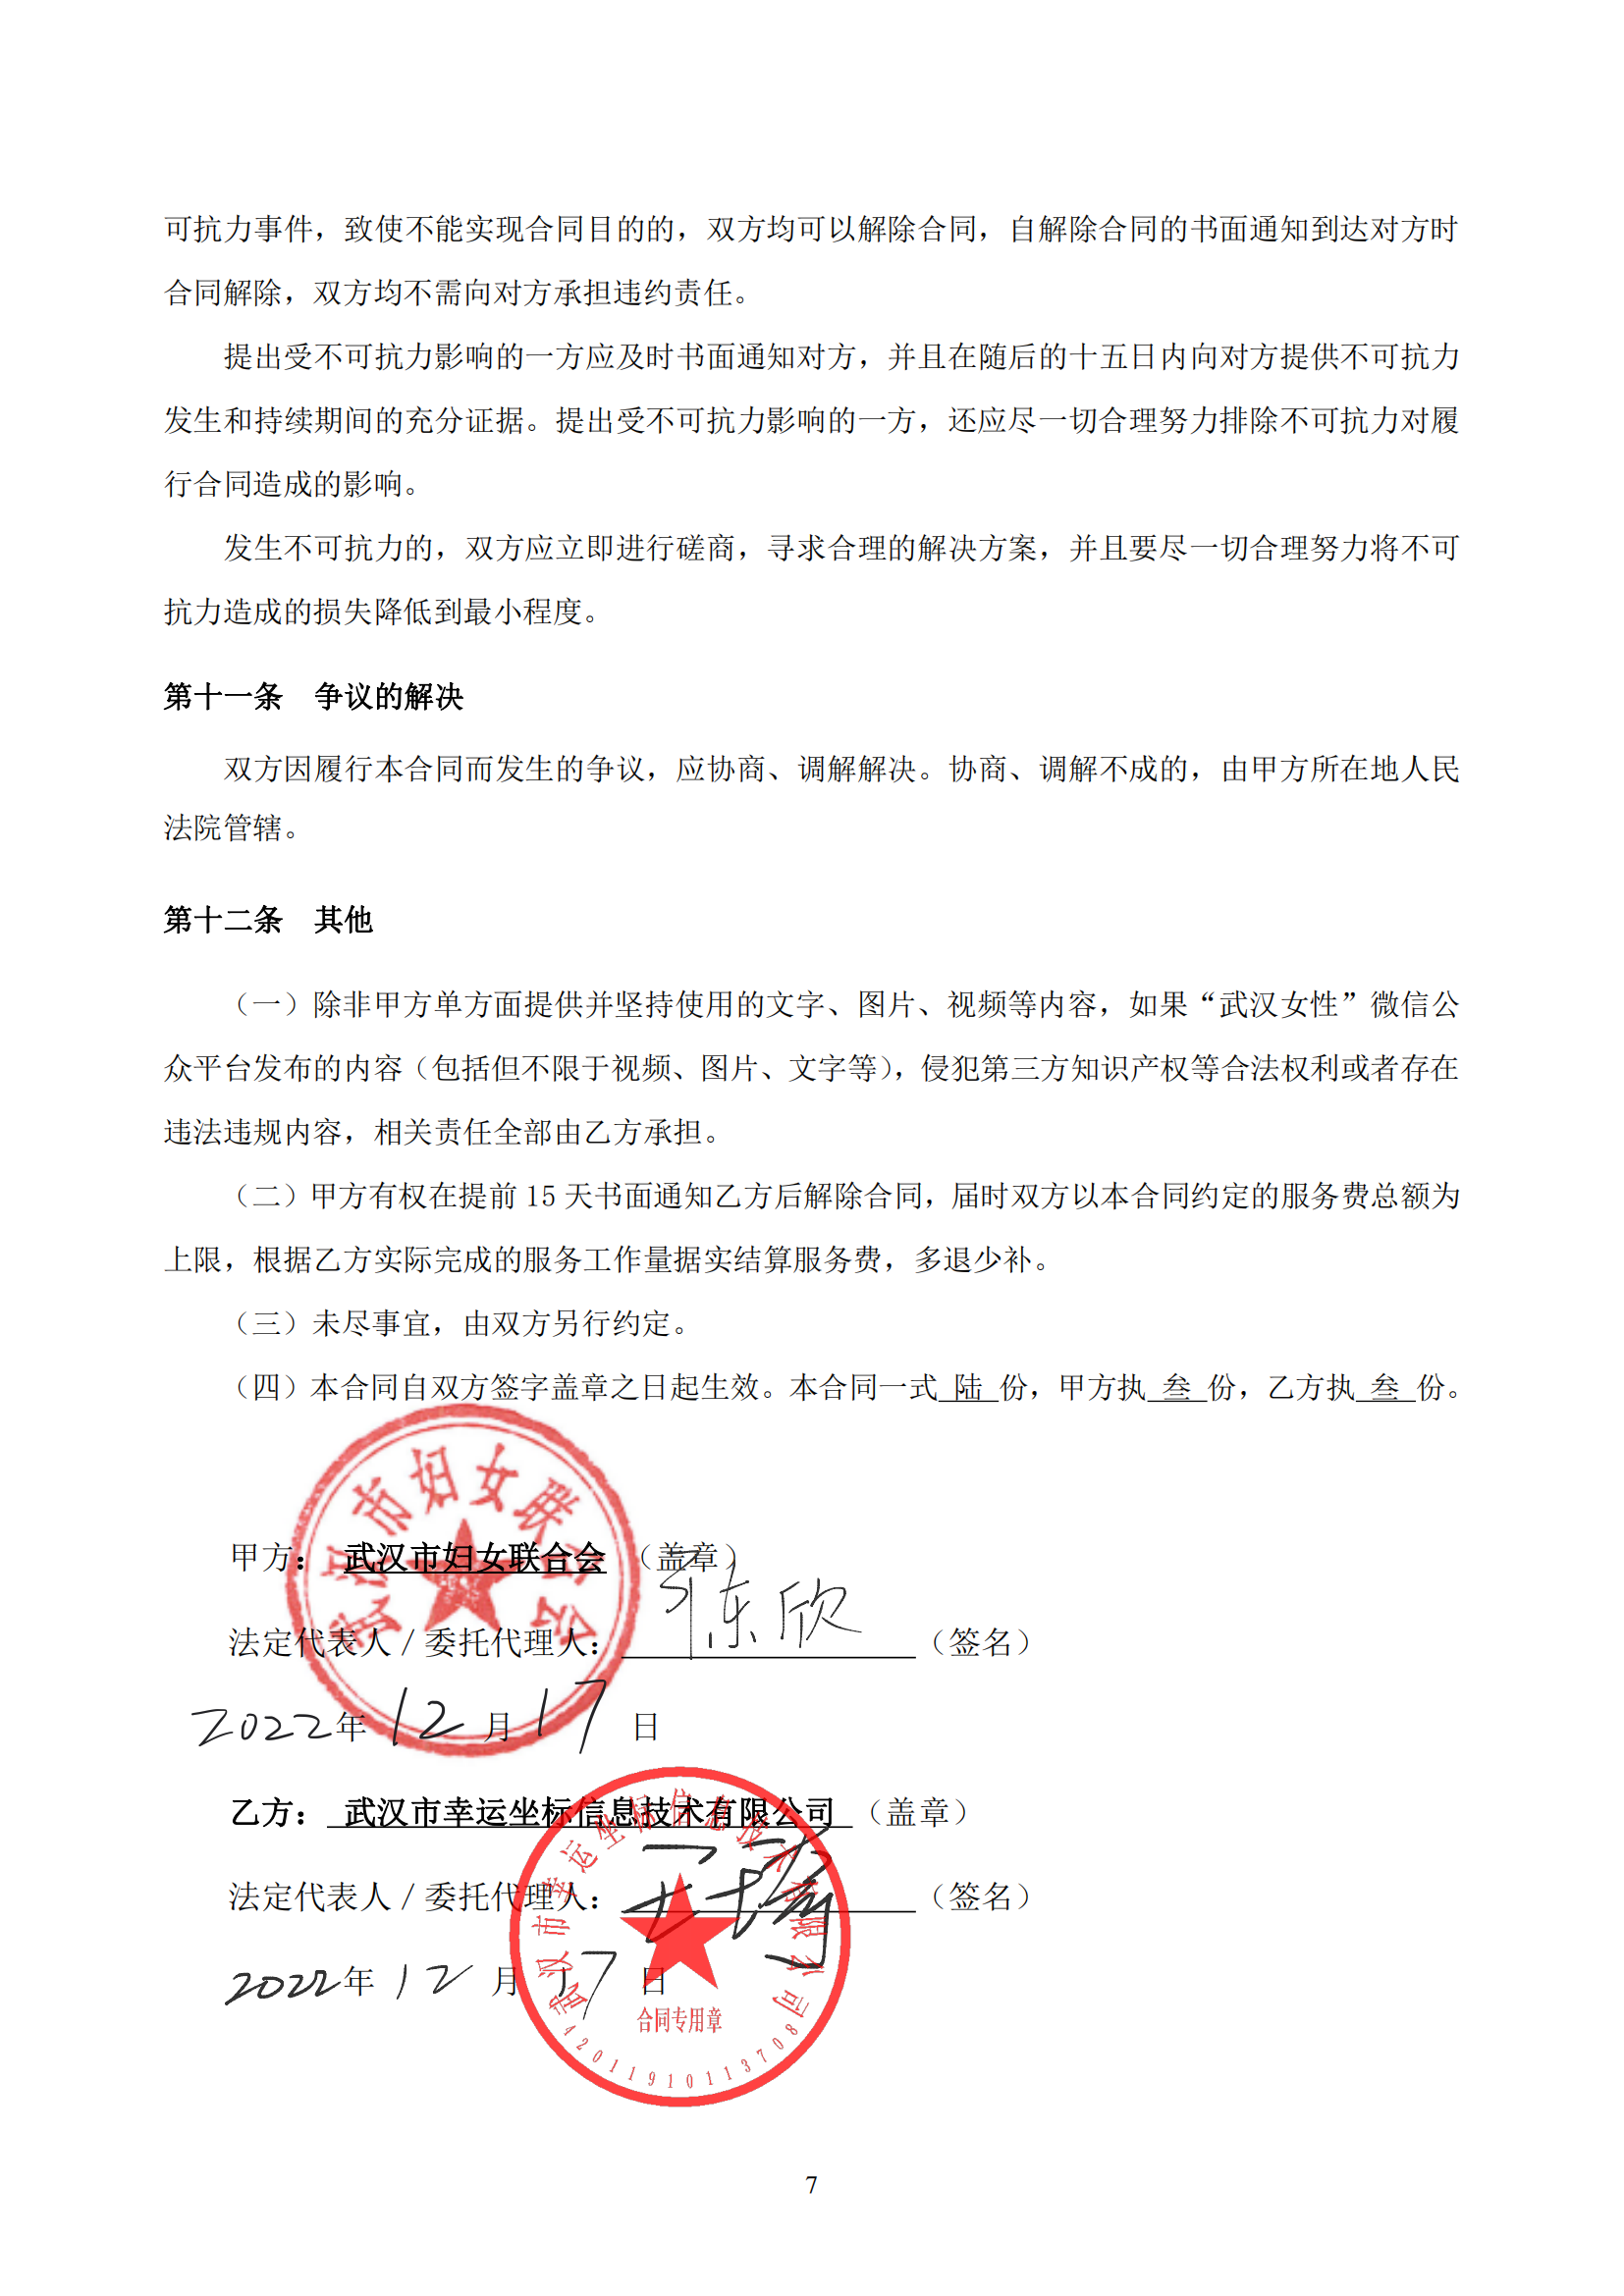 武汉妇联官方微信新媒体运维及改版升级项目合同_07.png